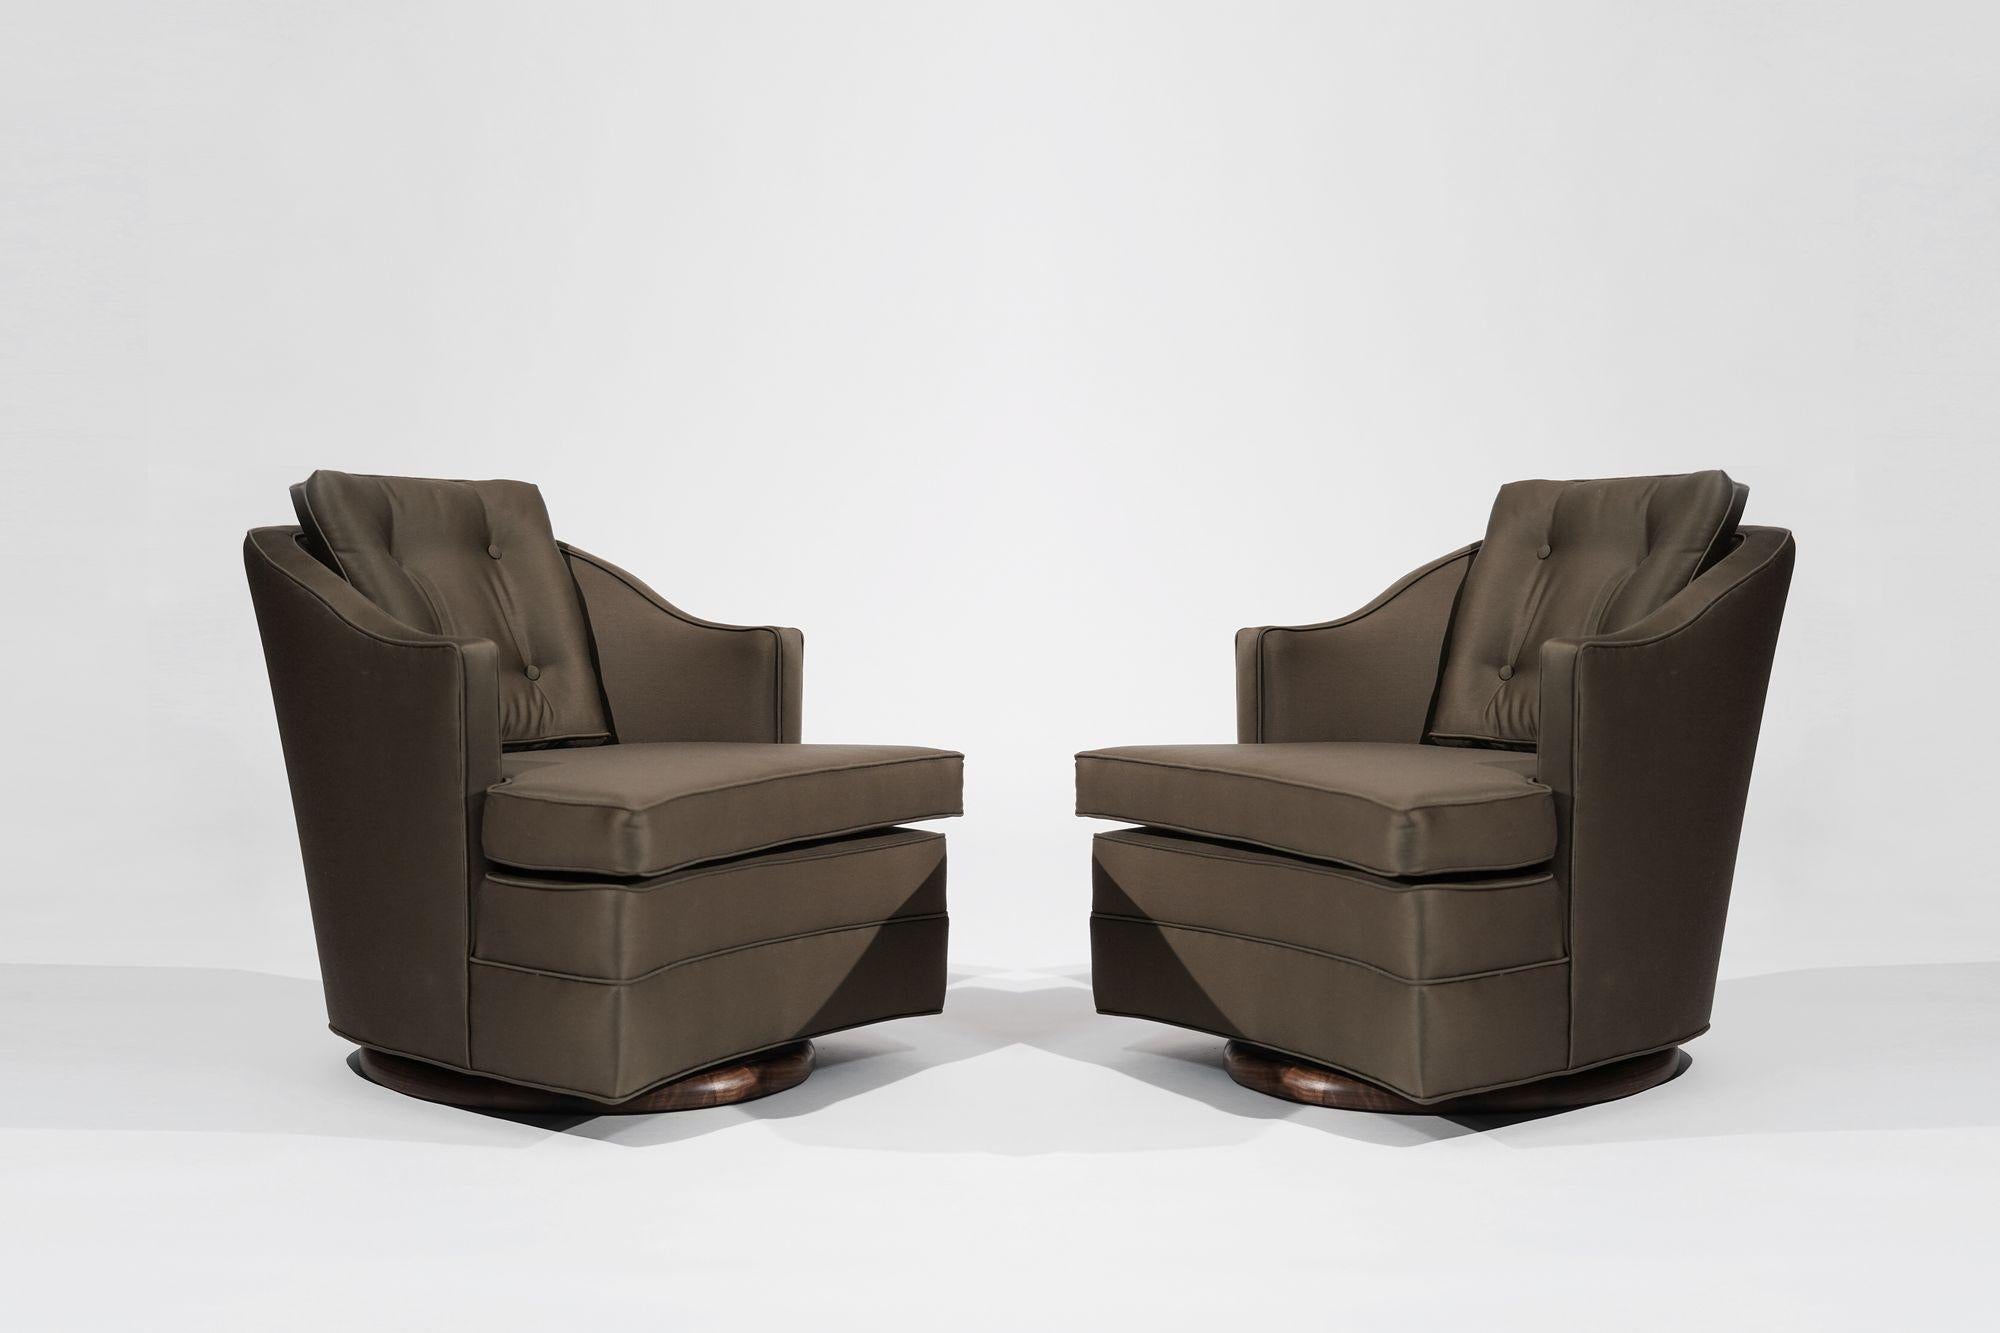 Ein zeitloses Duo von Vintage-Drehstühlen, inspiriert durch den ikonischen Stil von Edward Wormley für Dunbar. Diese Stühle, die sorgfältig restauriert wurden, strahlen Eleganz und Raffinesse der Jahrhundertmitte aus. Die Stühle sind mit luxuriöser